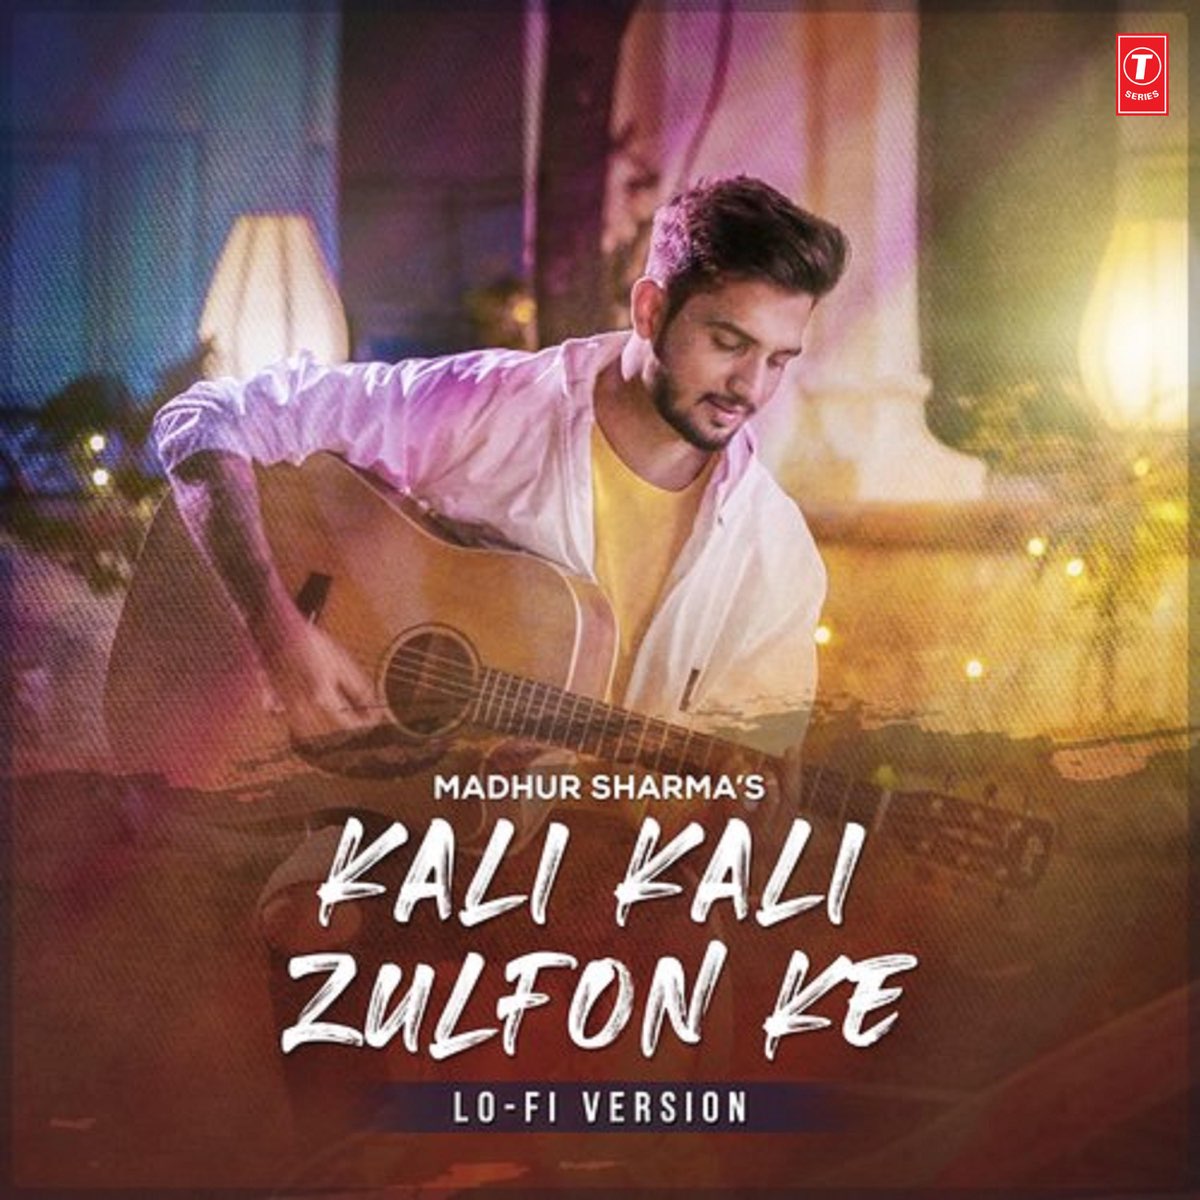 ‎Kali Kali Zulfon Ke (Lo-Fi) - Single by Madhur Sharma on Apple Music